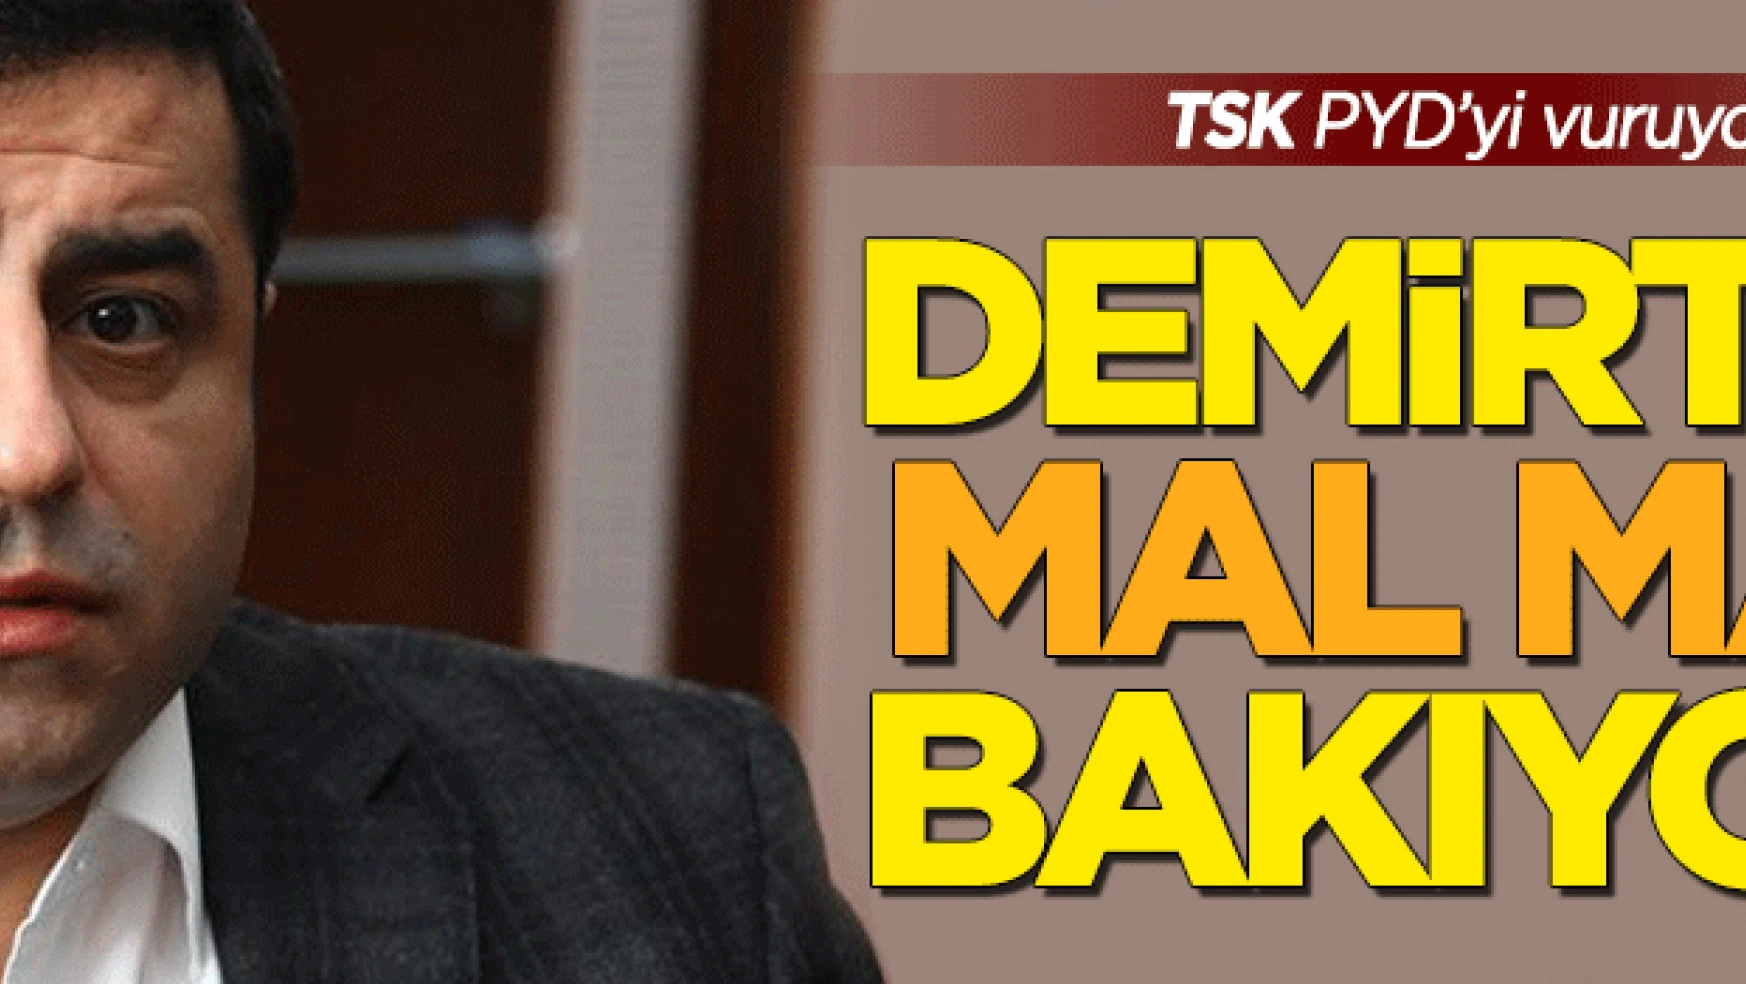 TSK PYD'yi vuruyor Demirtaş 'mal mal' bakıyor